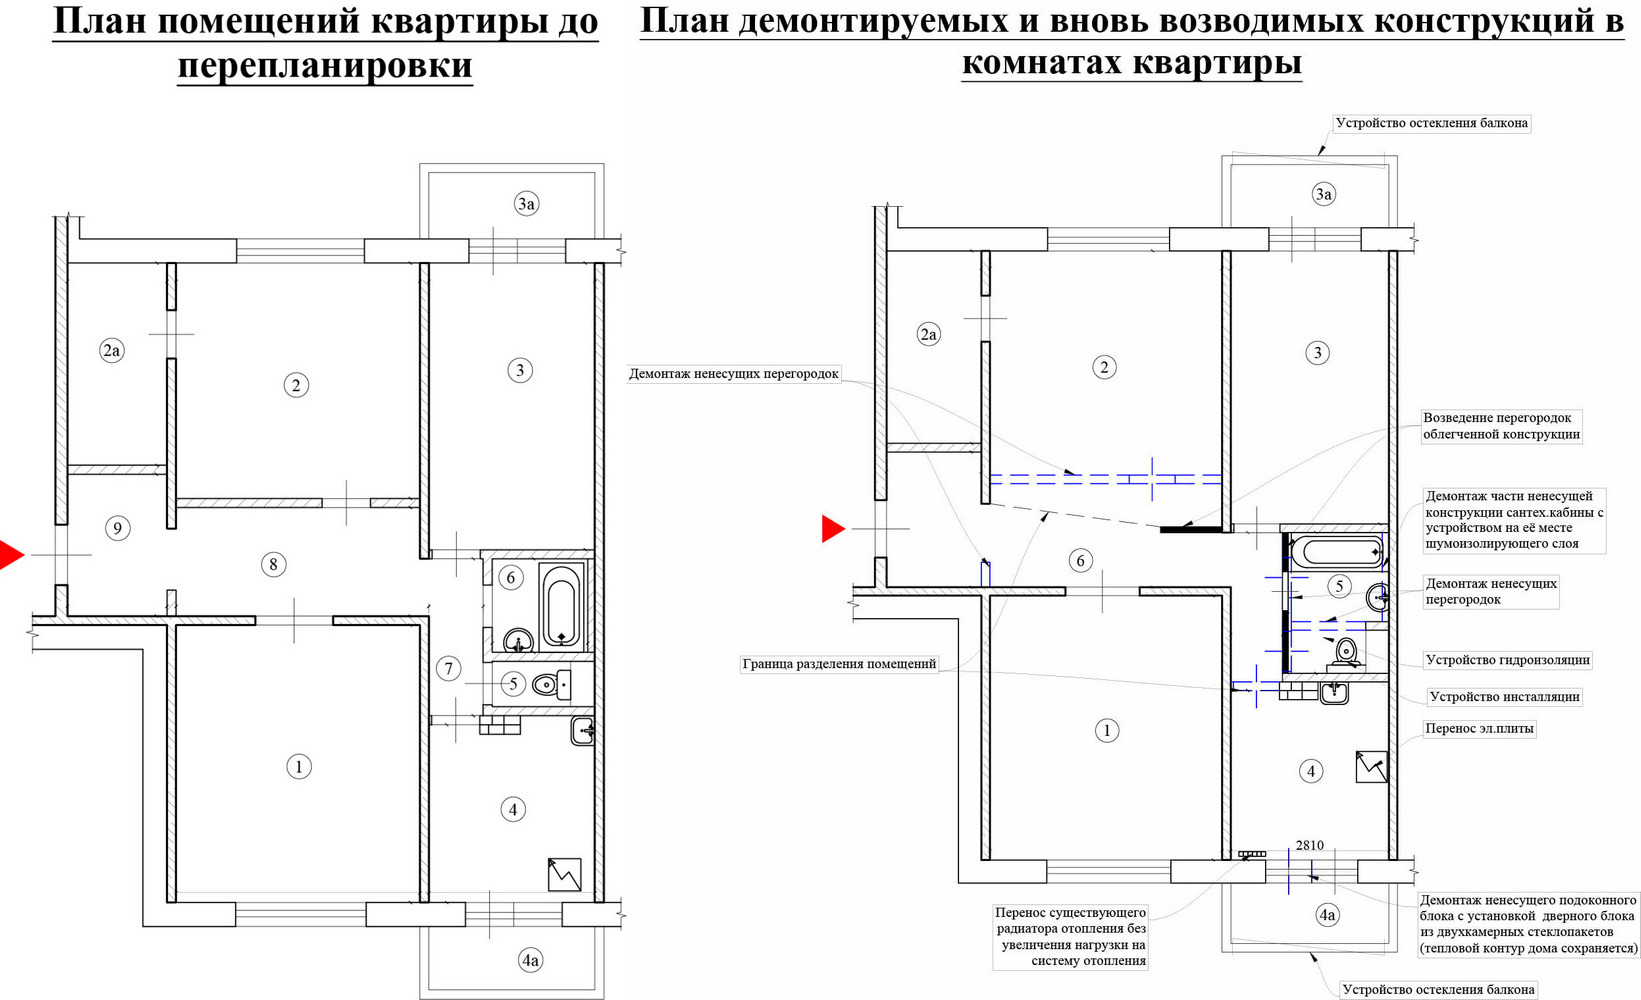 Слева – план квартиры до ремонта, справа описаны все работы, которые были в этой квартире в рамках перепланировки и которые согласовывали.